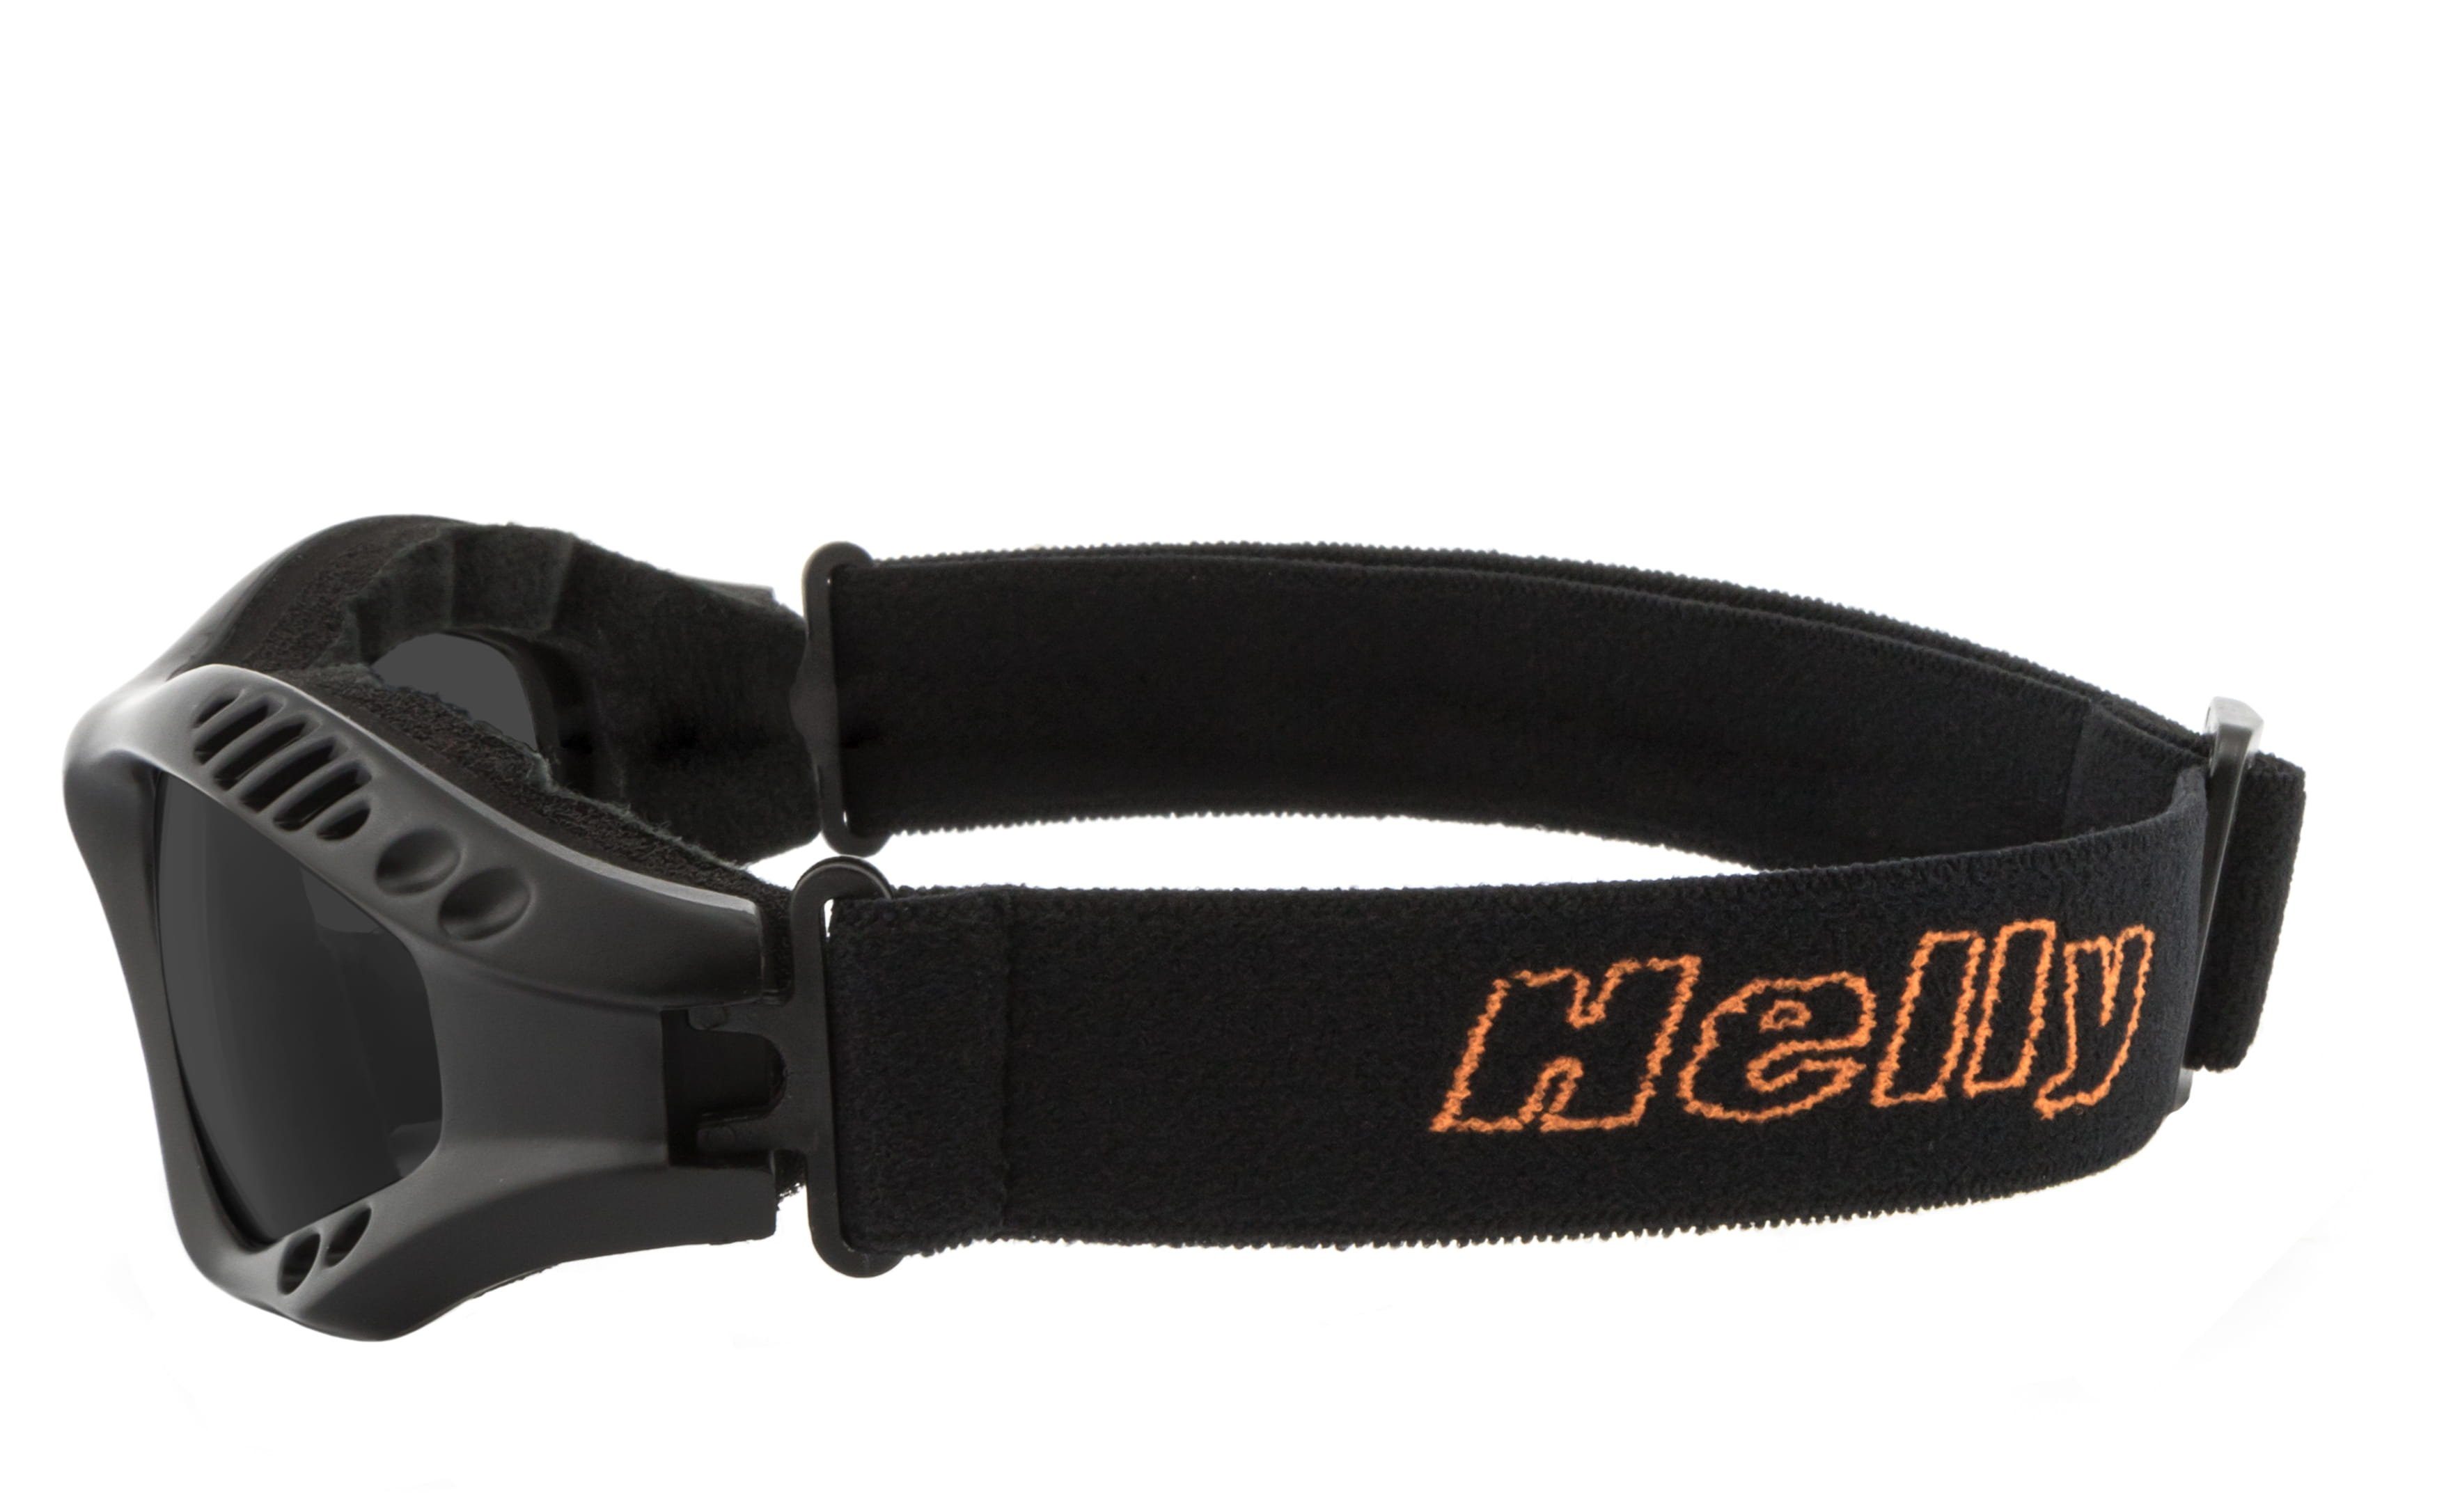 Helly - No.1 Bikereyes hellrider, gepolsterte Motorradbrille Motorradbrille